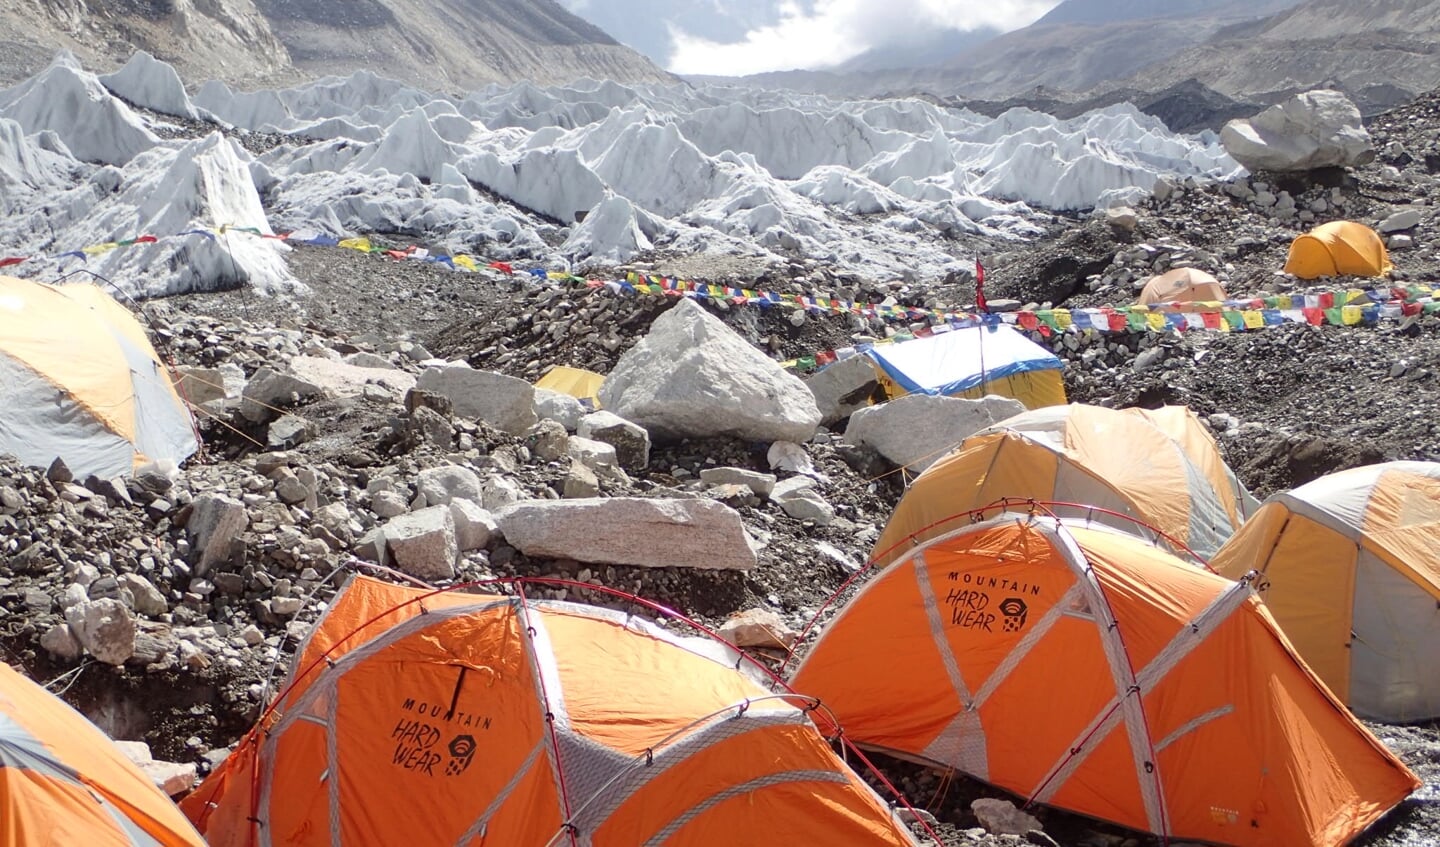 De atleten sliepen in het Base Camp op de Mount Everest bij min 25 graden tijdens de Mount Everest Marathon in 2015